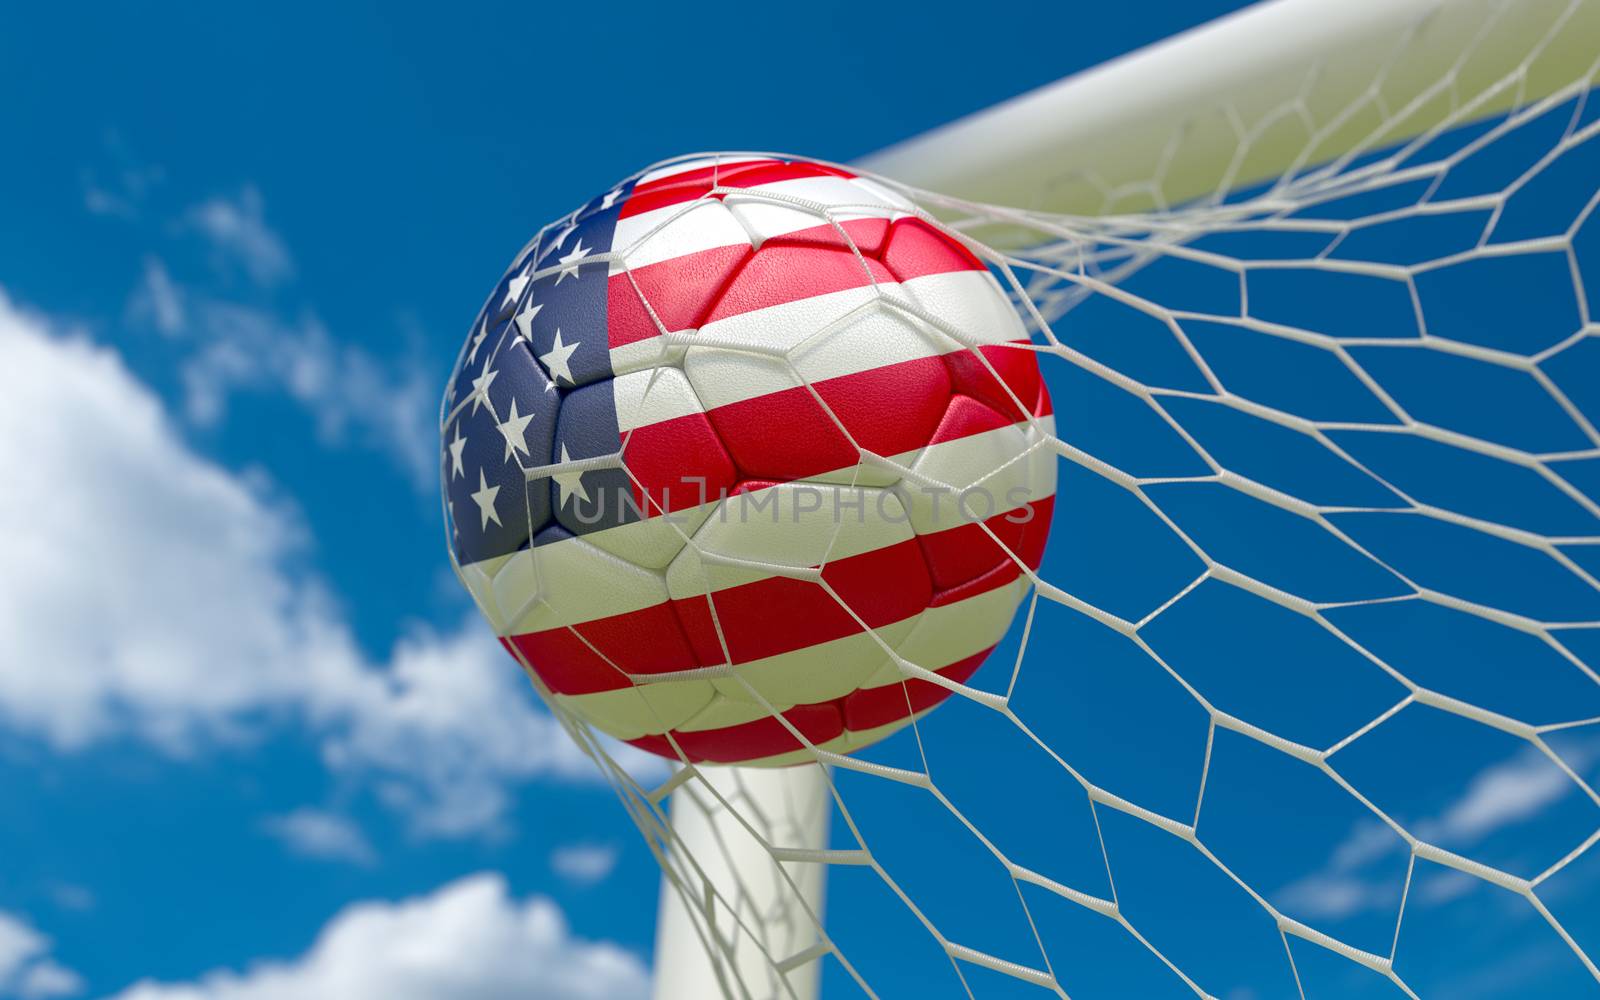 USA flag and soccer ball in goal net by Barbraford